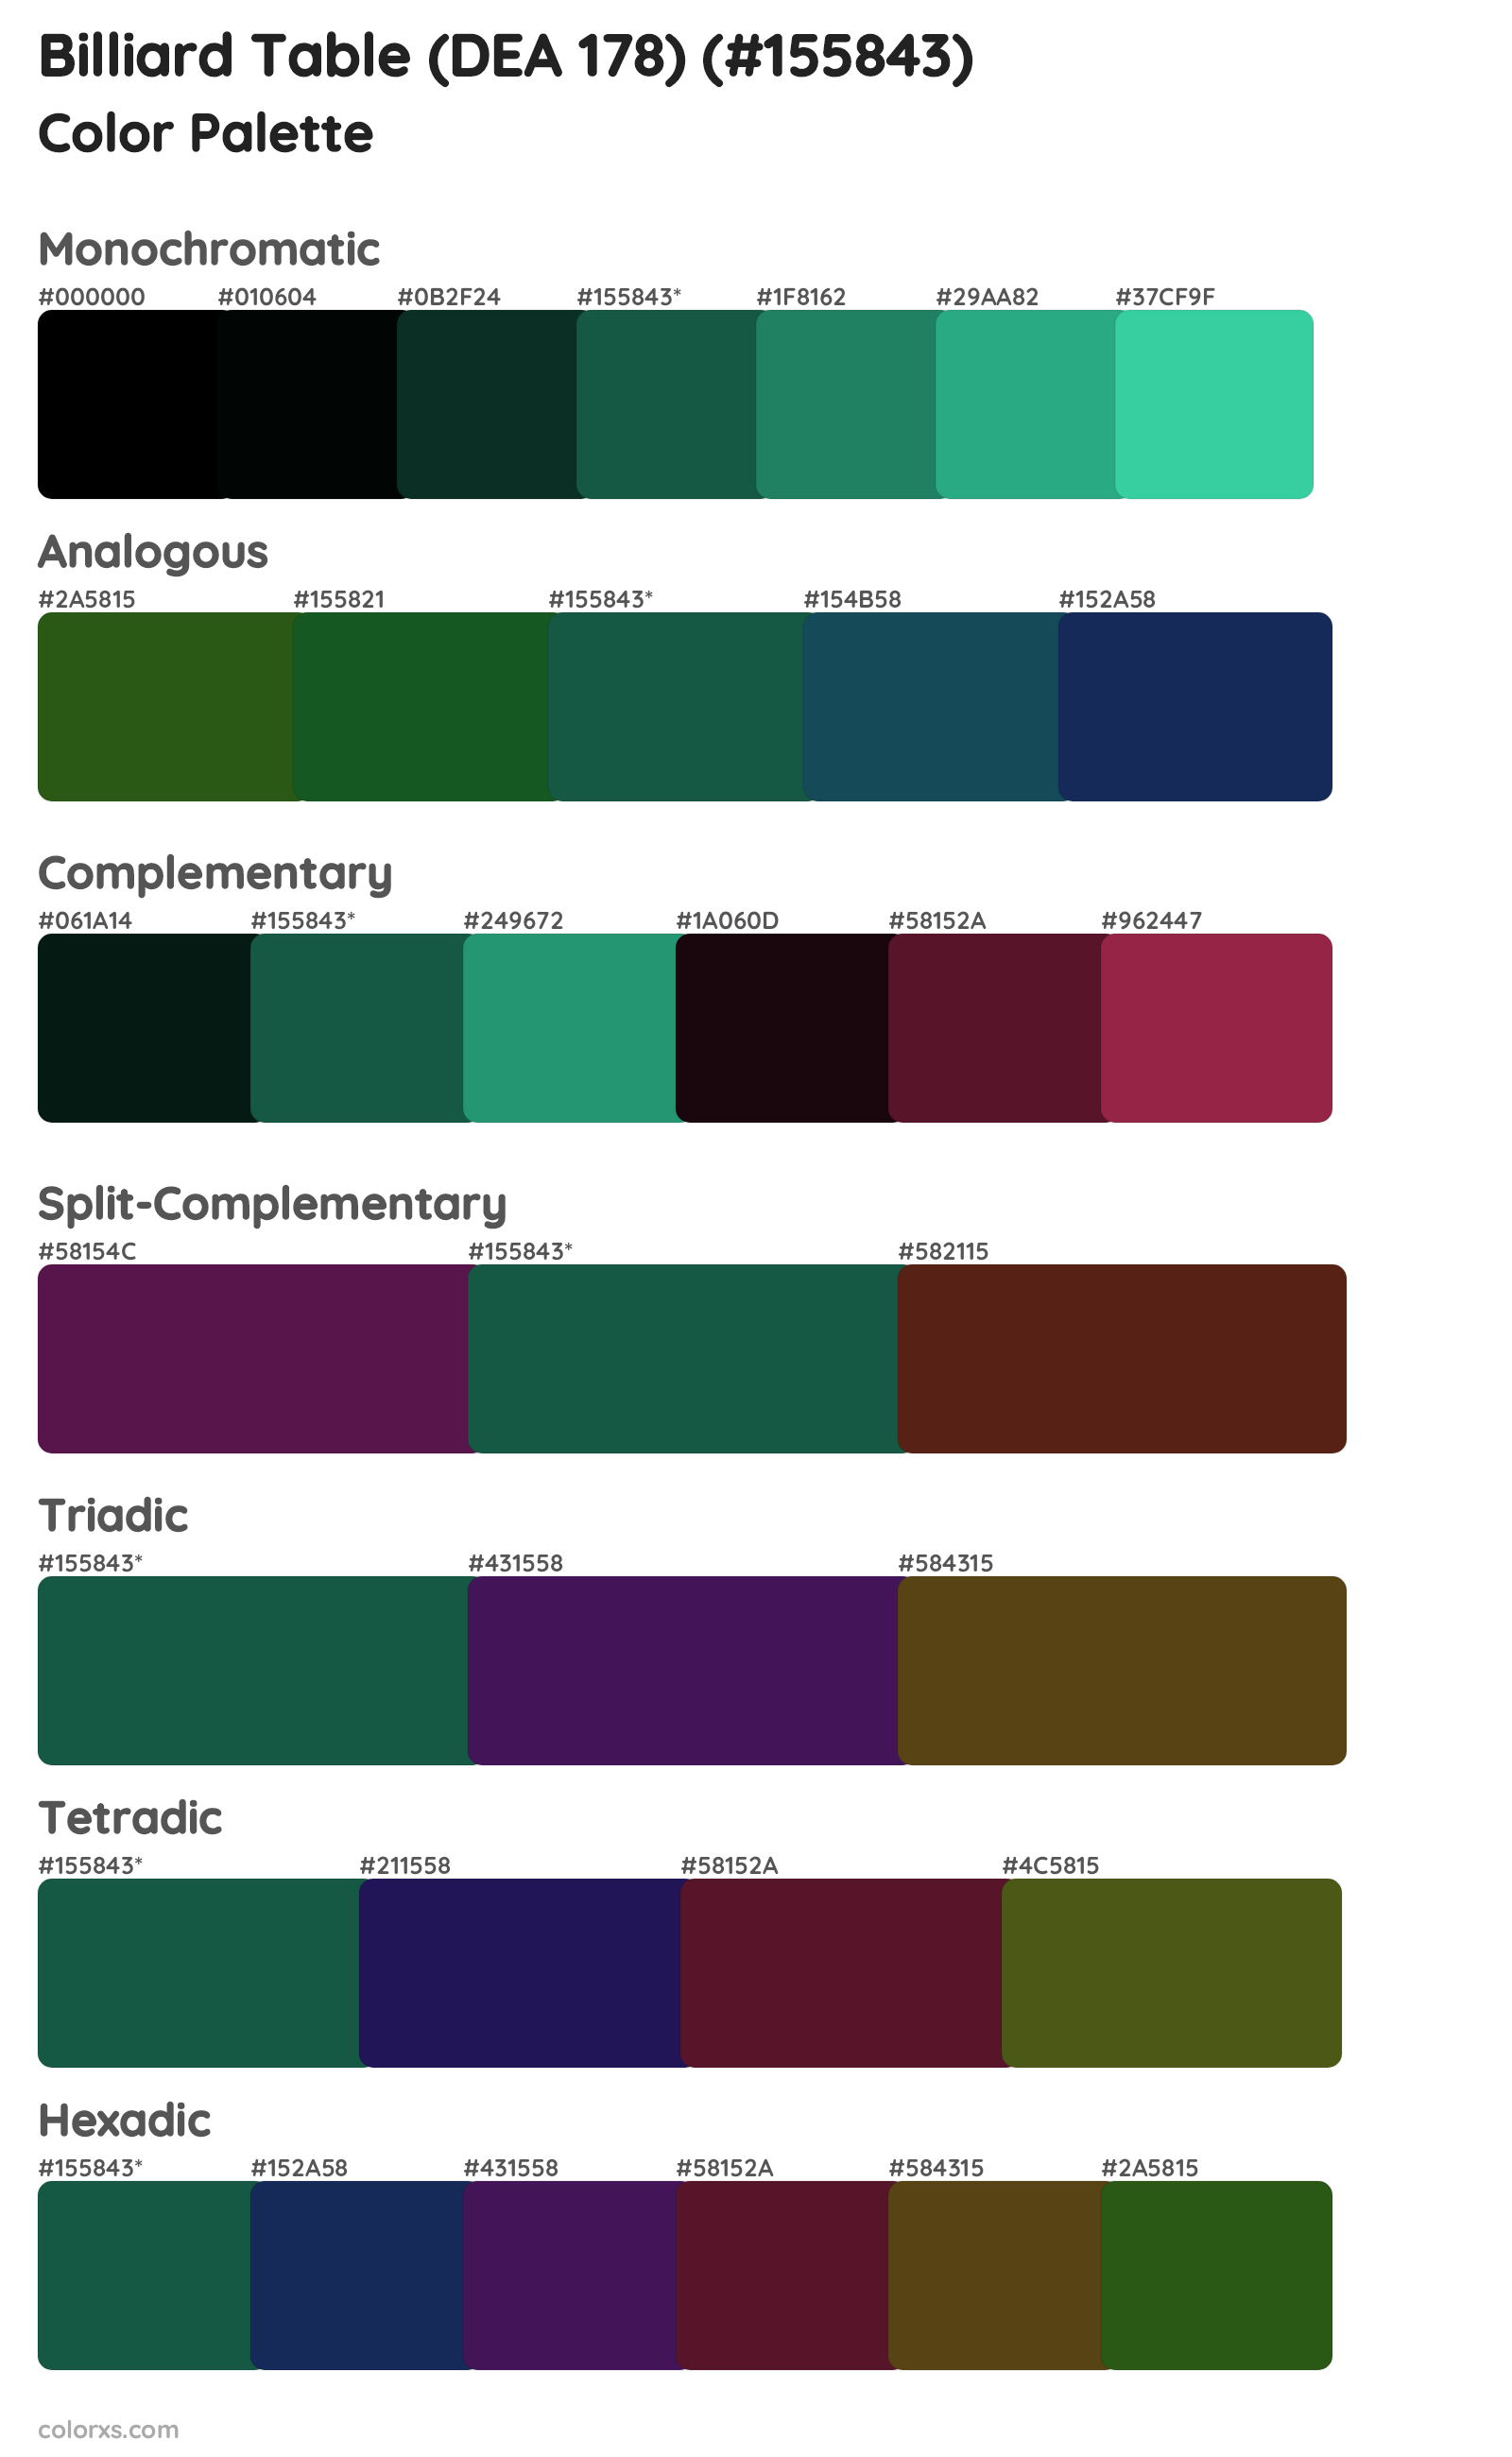 Billiard Table (DEA 178) Color Scheme Palettes